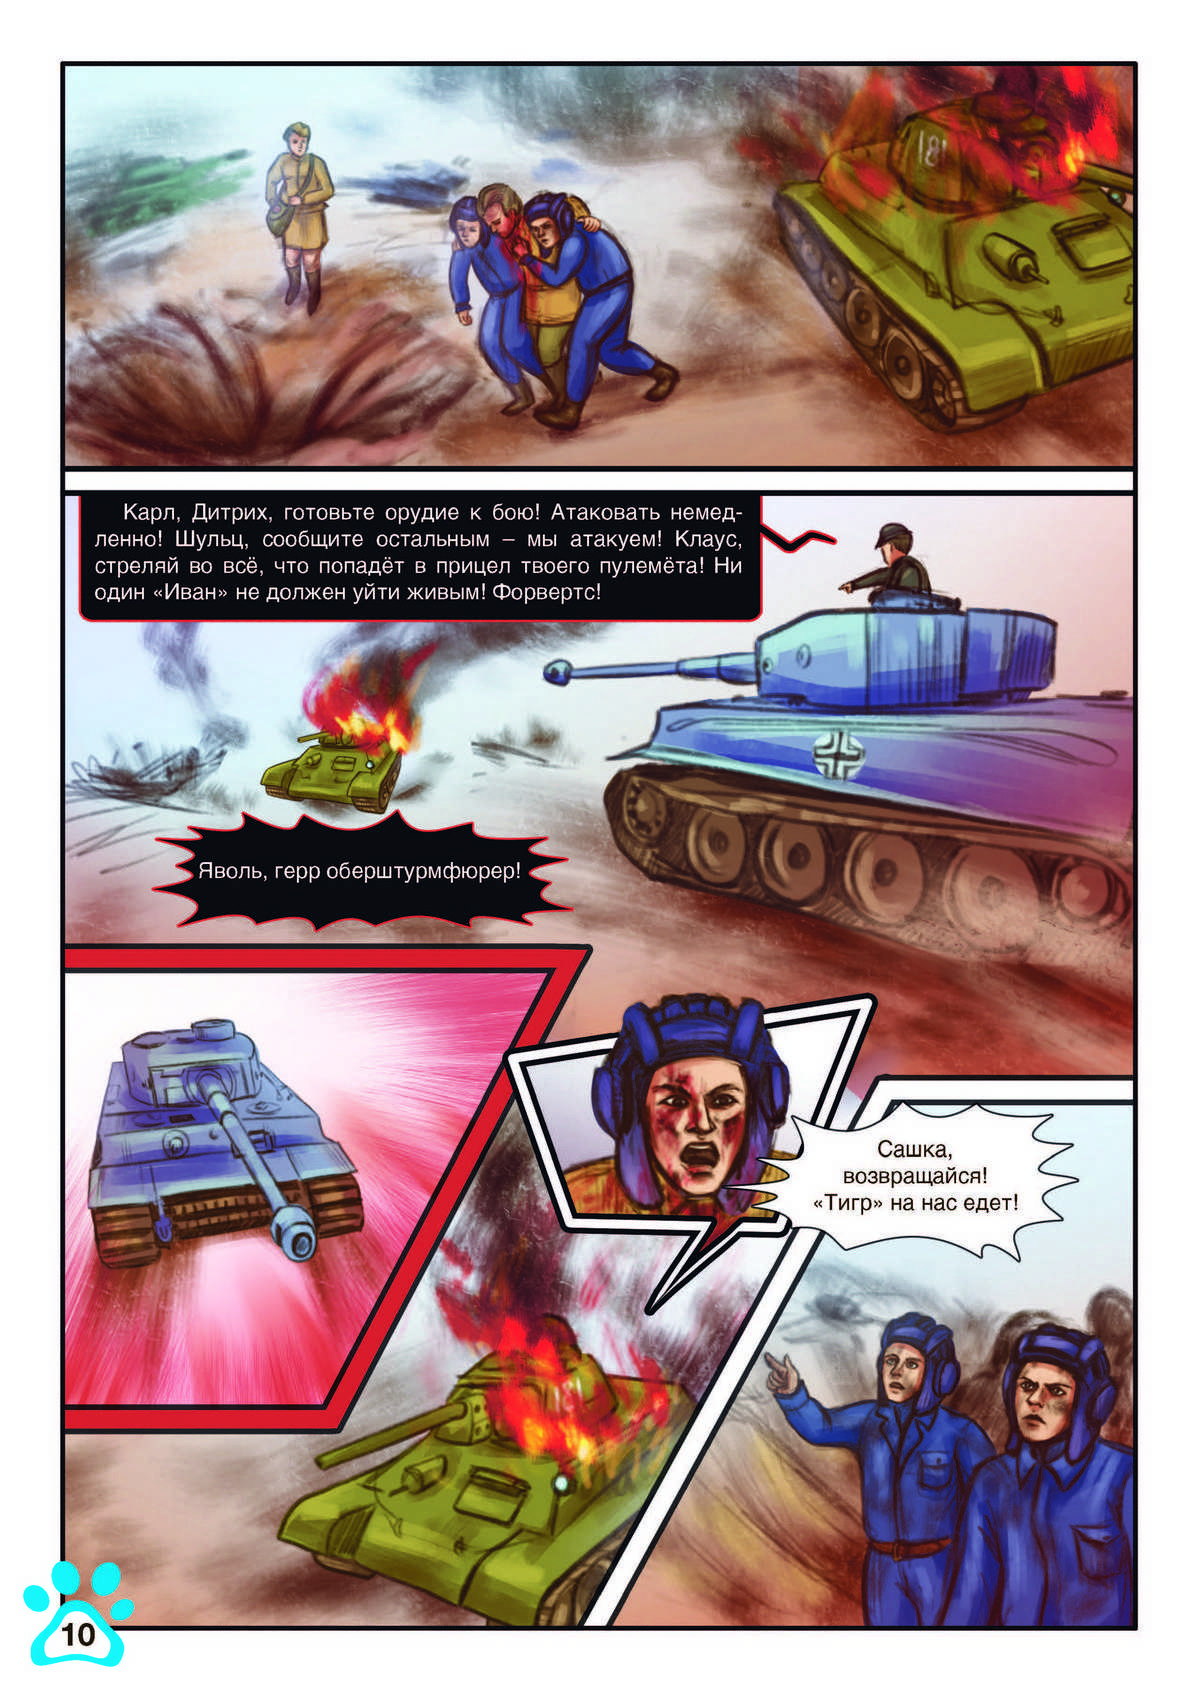 сталинский таран танки штурмуют доты фото 4